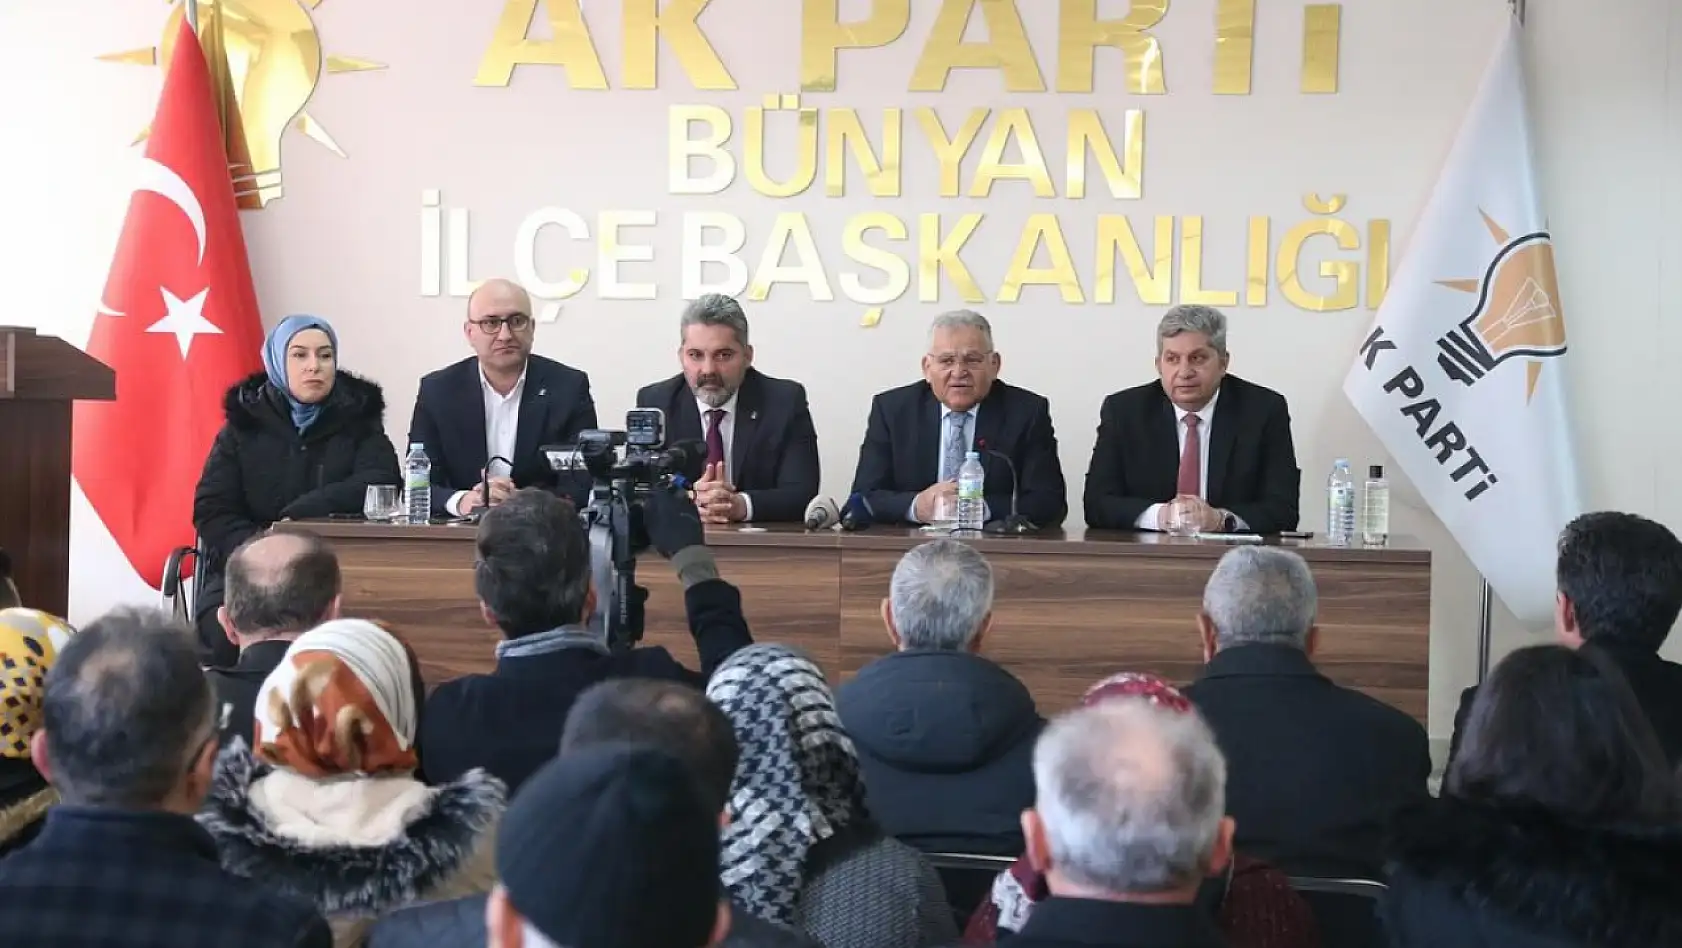 MHP'nin bugün çıkarma yaptığı ilçede AK Parti'den dikkat çeken buluşma!